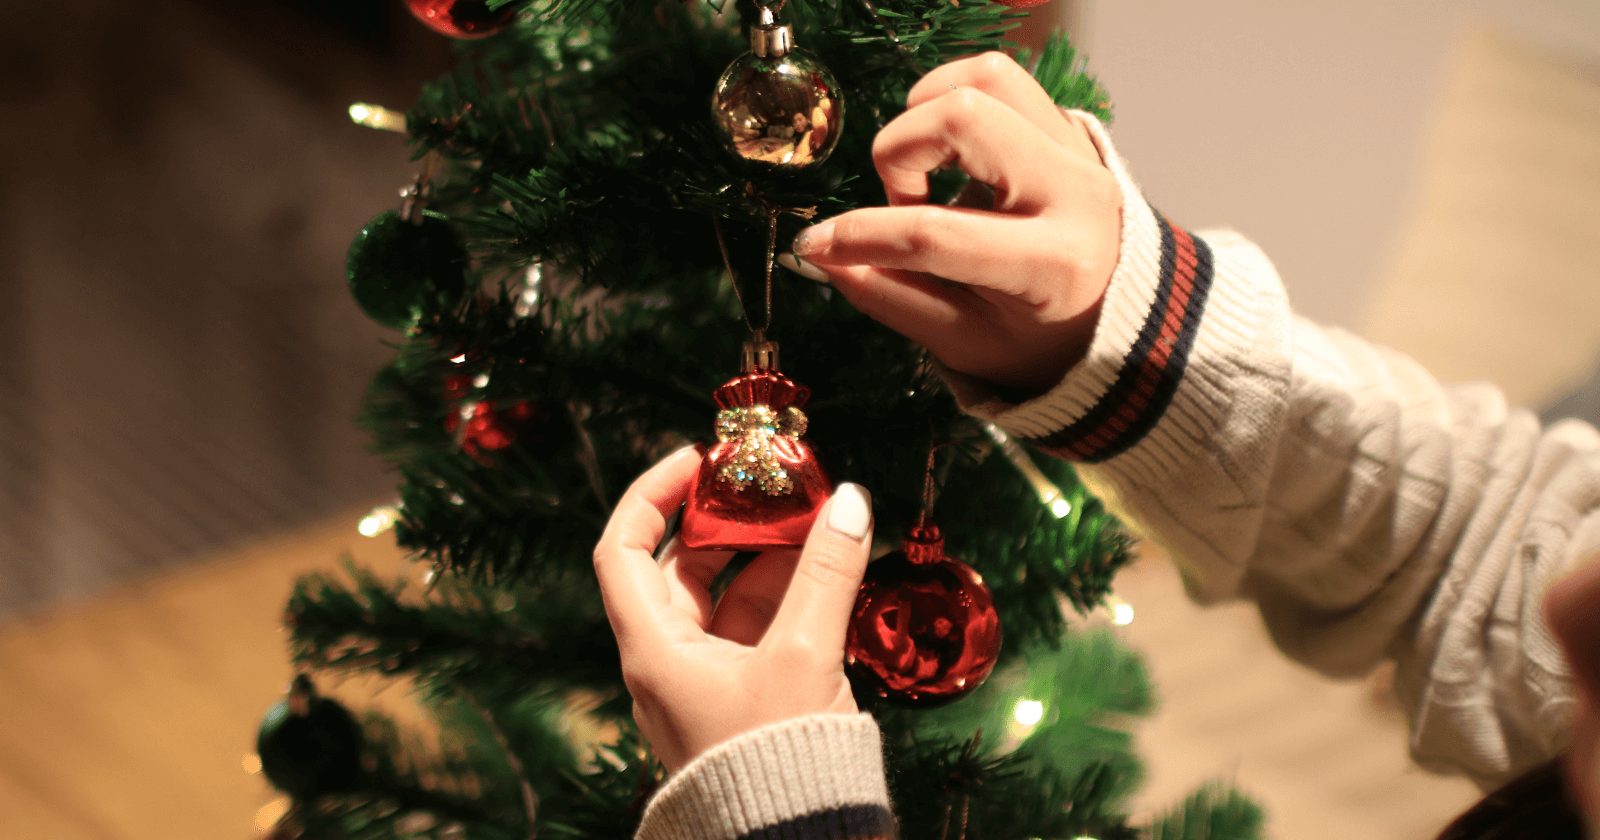 Use o Feng Shui para decorar sua árvore de Natal e conseguir atrair as melhores energias